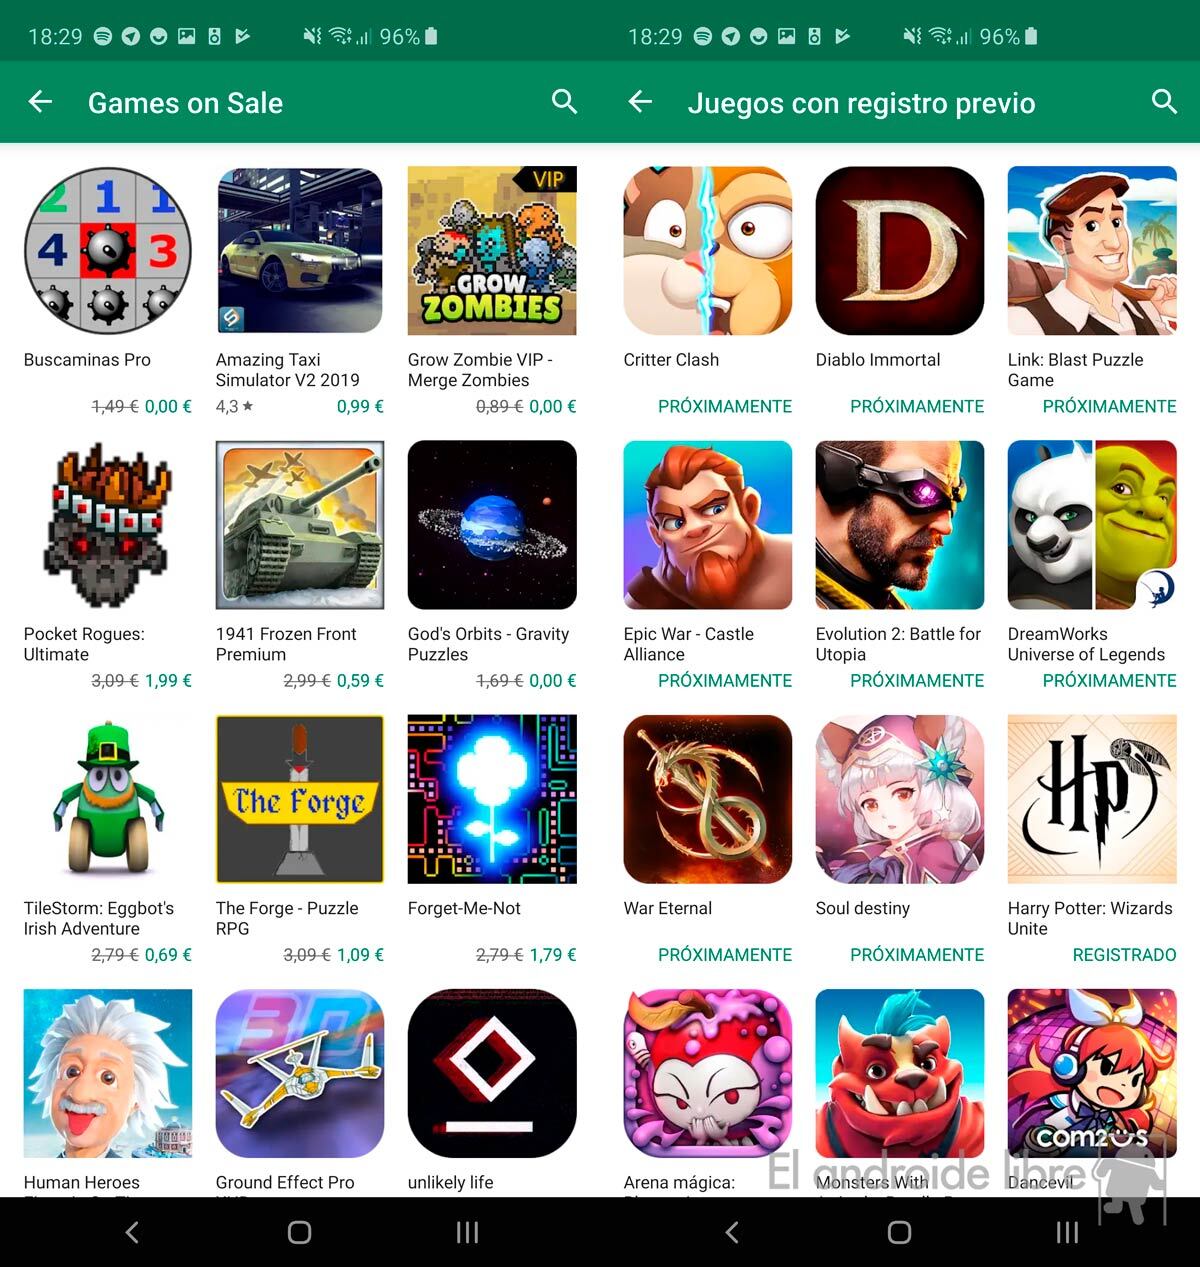 123 ofertas Google Play: aplicaciones y juegos gratis y con